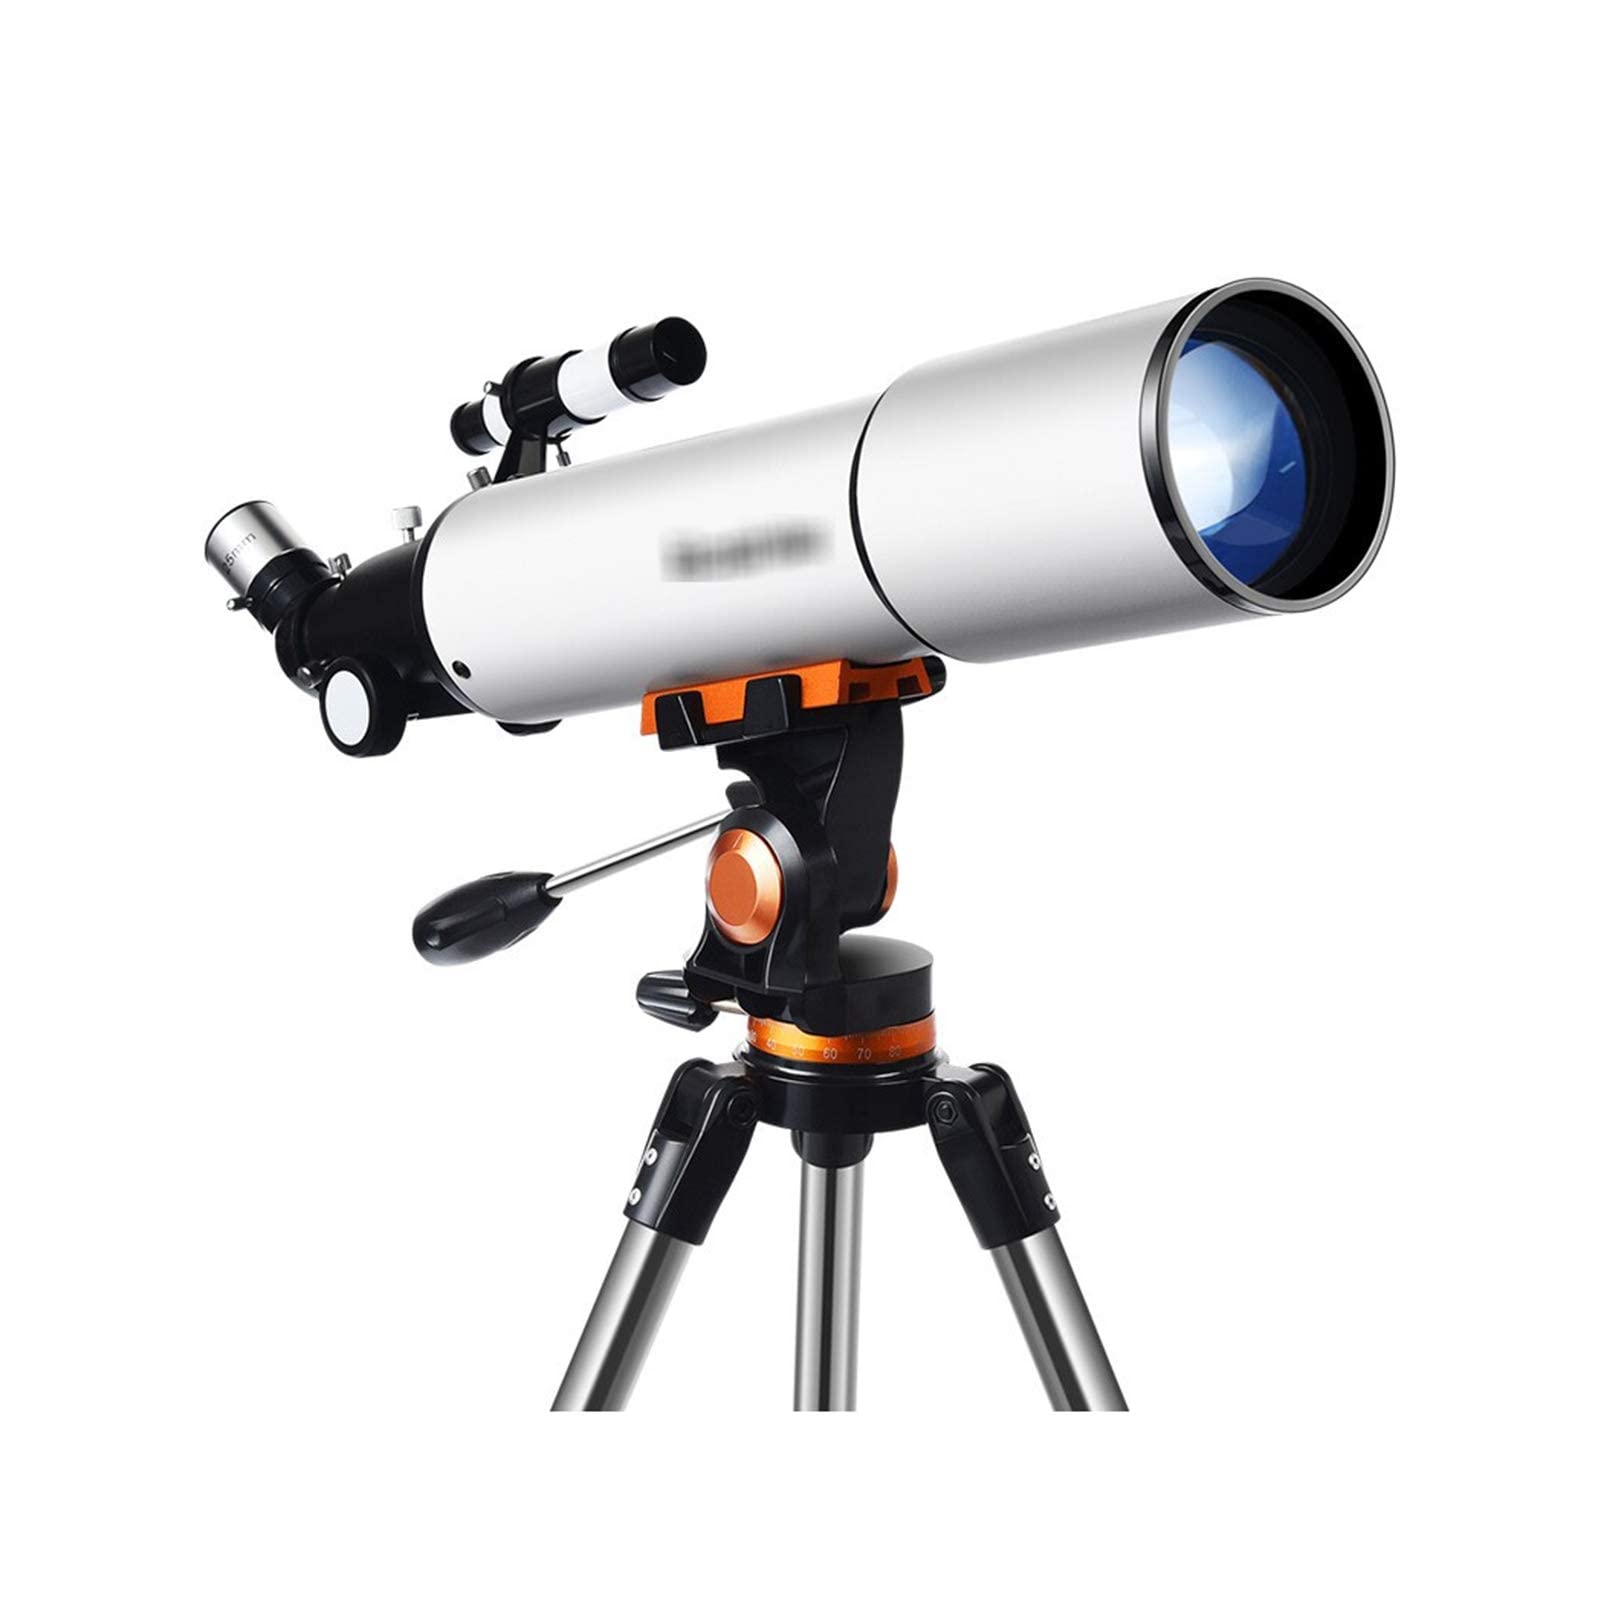 Spacmirrors Teleskop, astronomisches Brechungsteleskop für Erwachsene, Kinder, Anfänger, Astronomie-Refraktor mit höhenverstellbarem Stativ, kompaktes tragbares Reiseteleskop